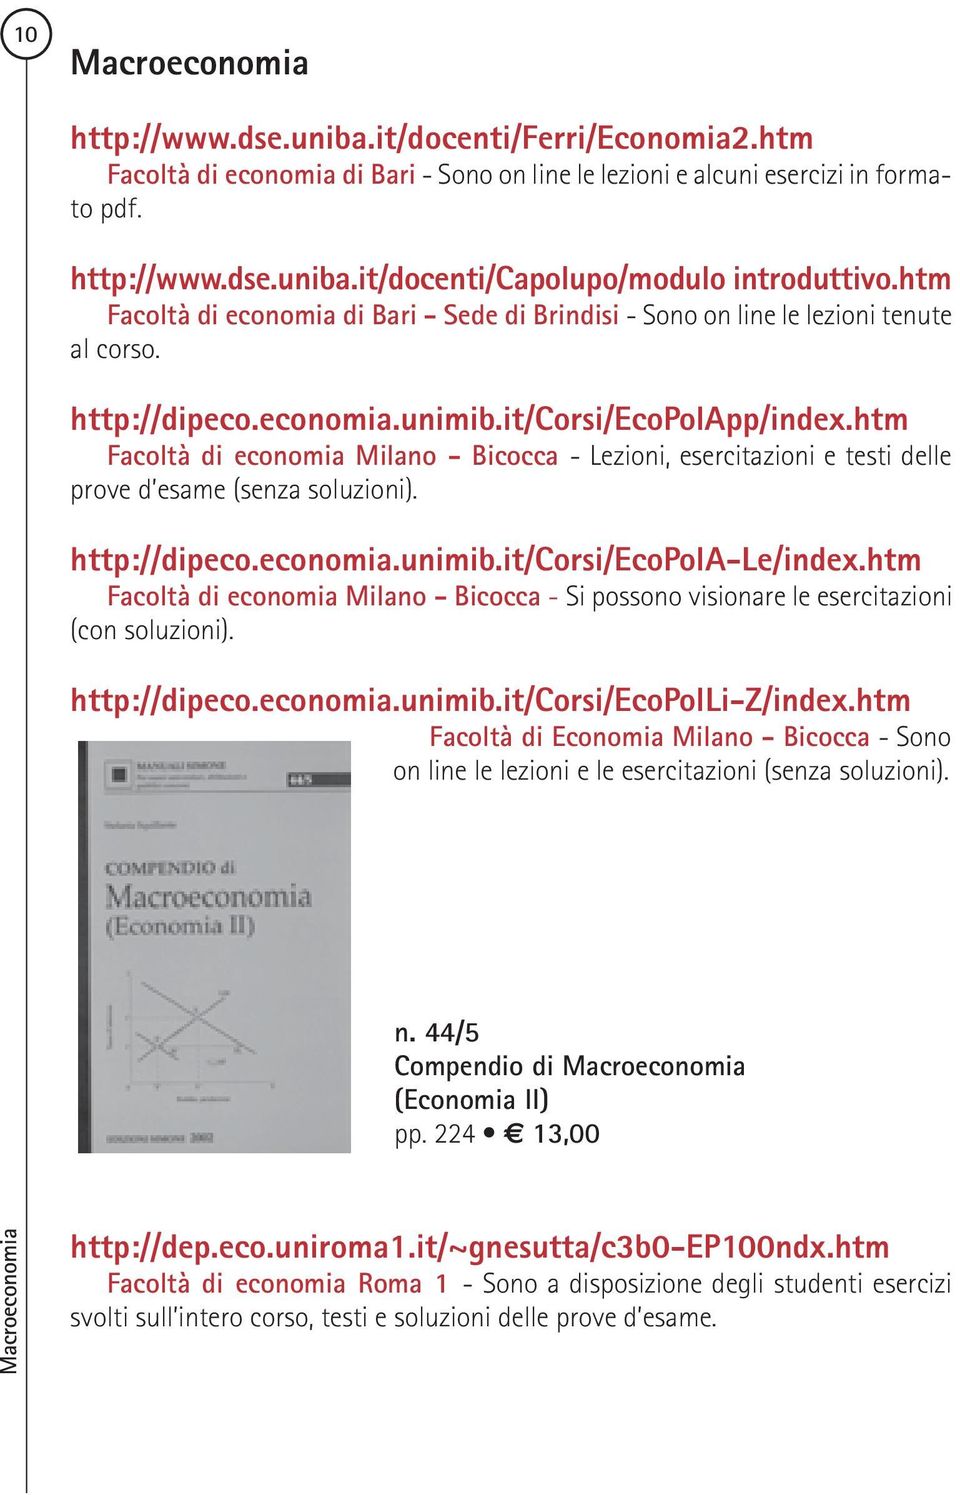 htm Facoltà di economia Milano - Bicocca - Lezioni, esercitazioni e testi delle prove d esame (senza soluzioni). http://dipeco.economia.unimib.it/corsi/ecopola-le/index.